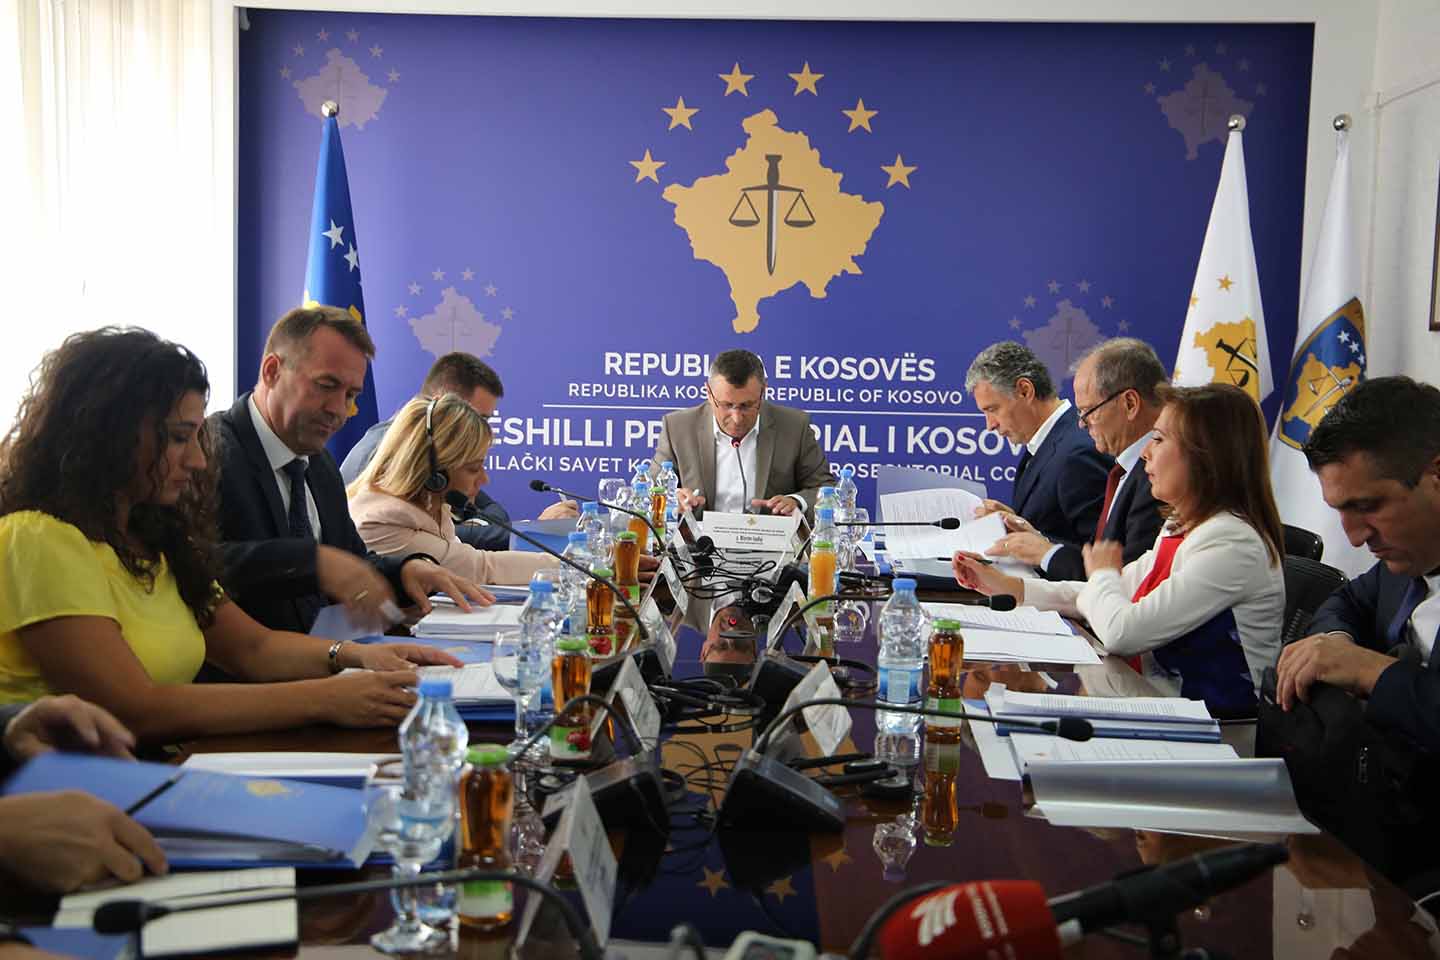 Është mbajtur takimi i radhës së Këshillit Prokurorial të Kosovës